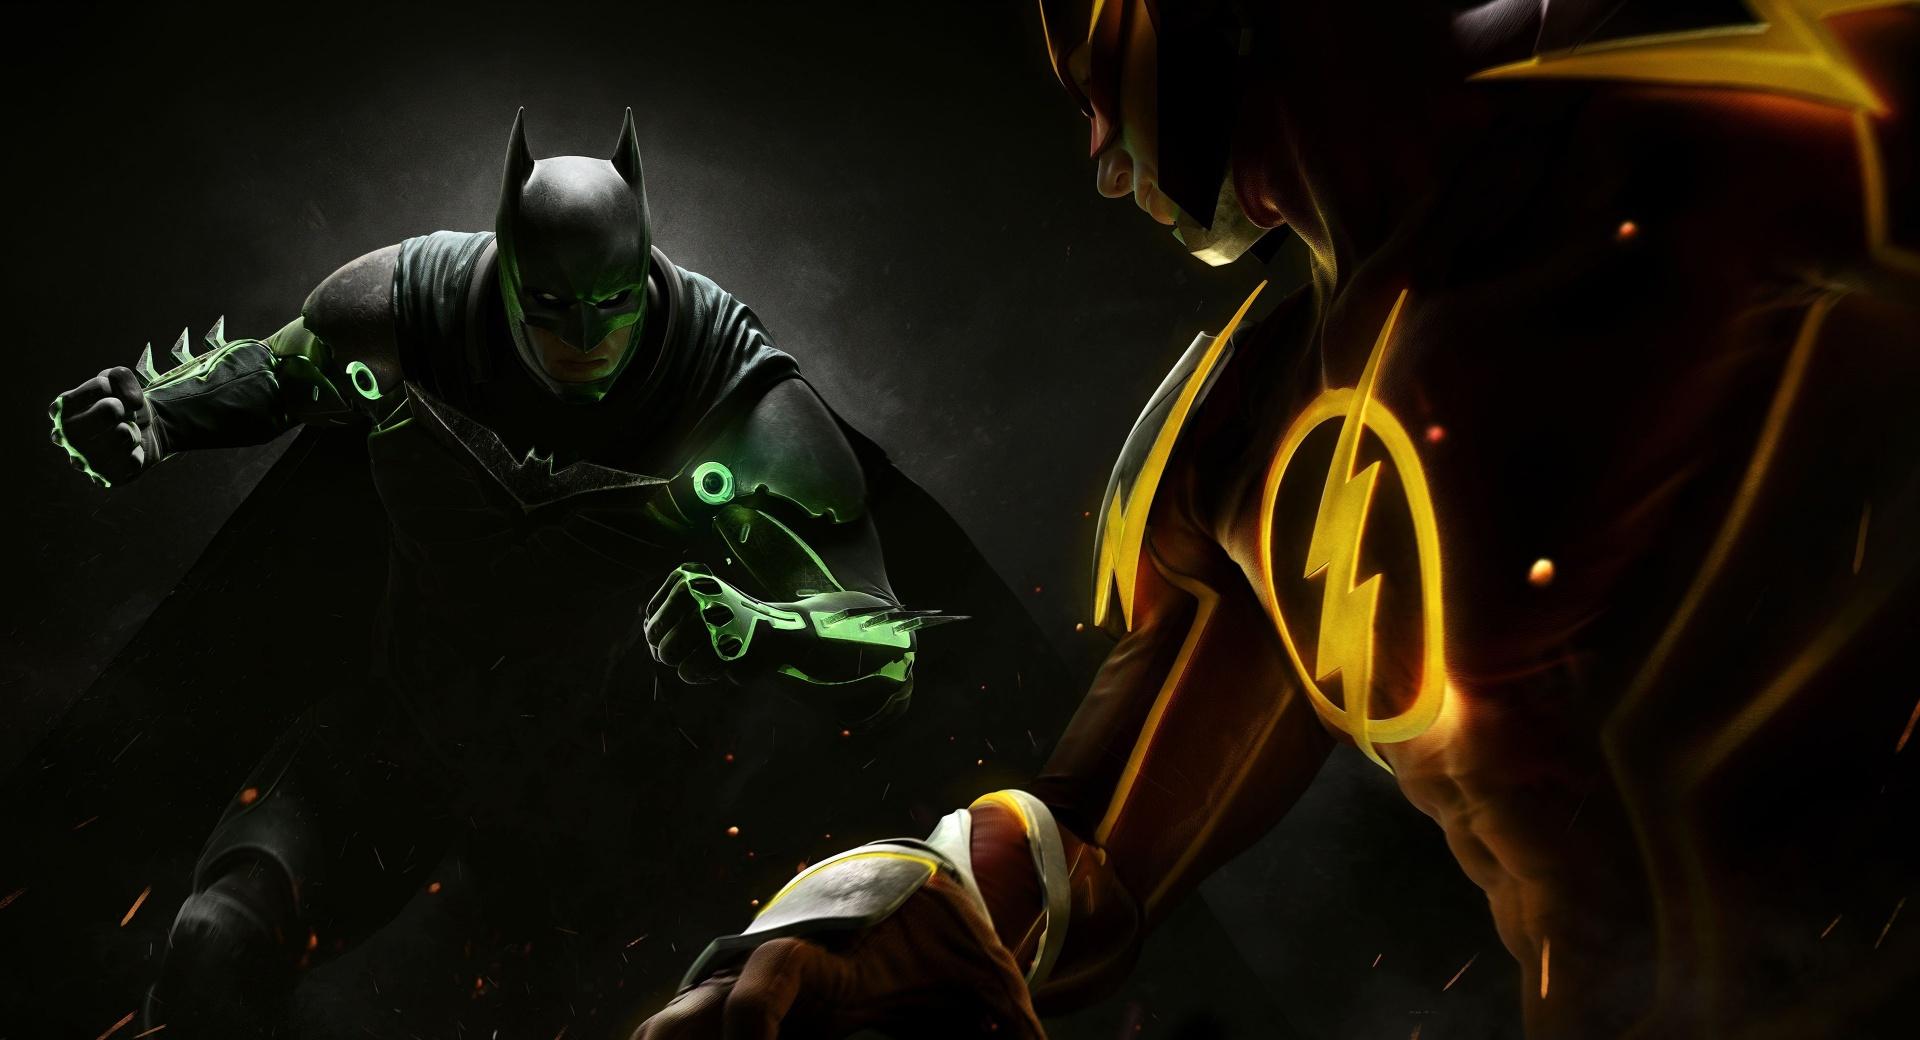 Injustice 2 Batman vs. Flash at 1024 x 1024 iPad size wallpapers HD quality